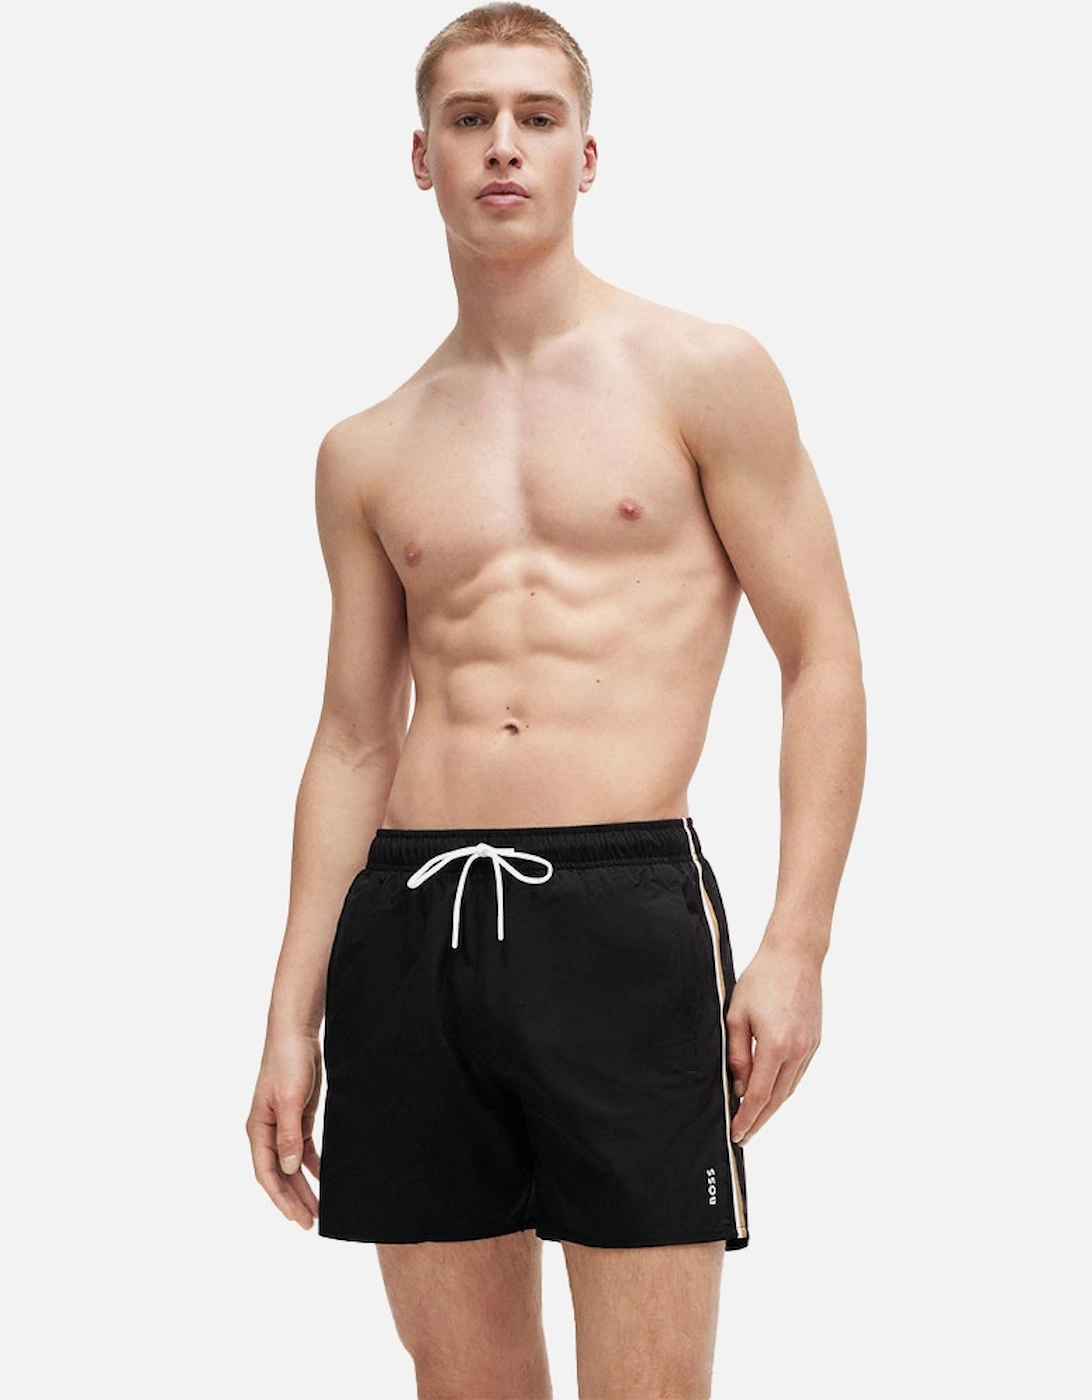 Iconic Swim Shorts, Black